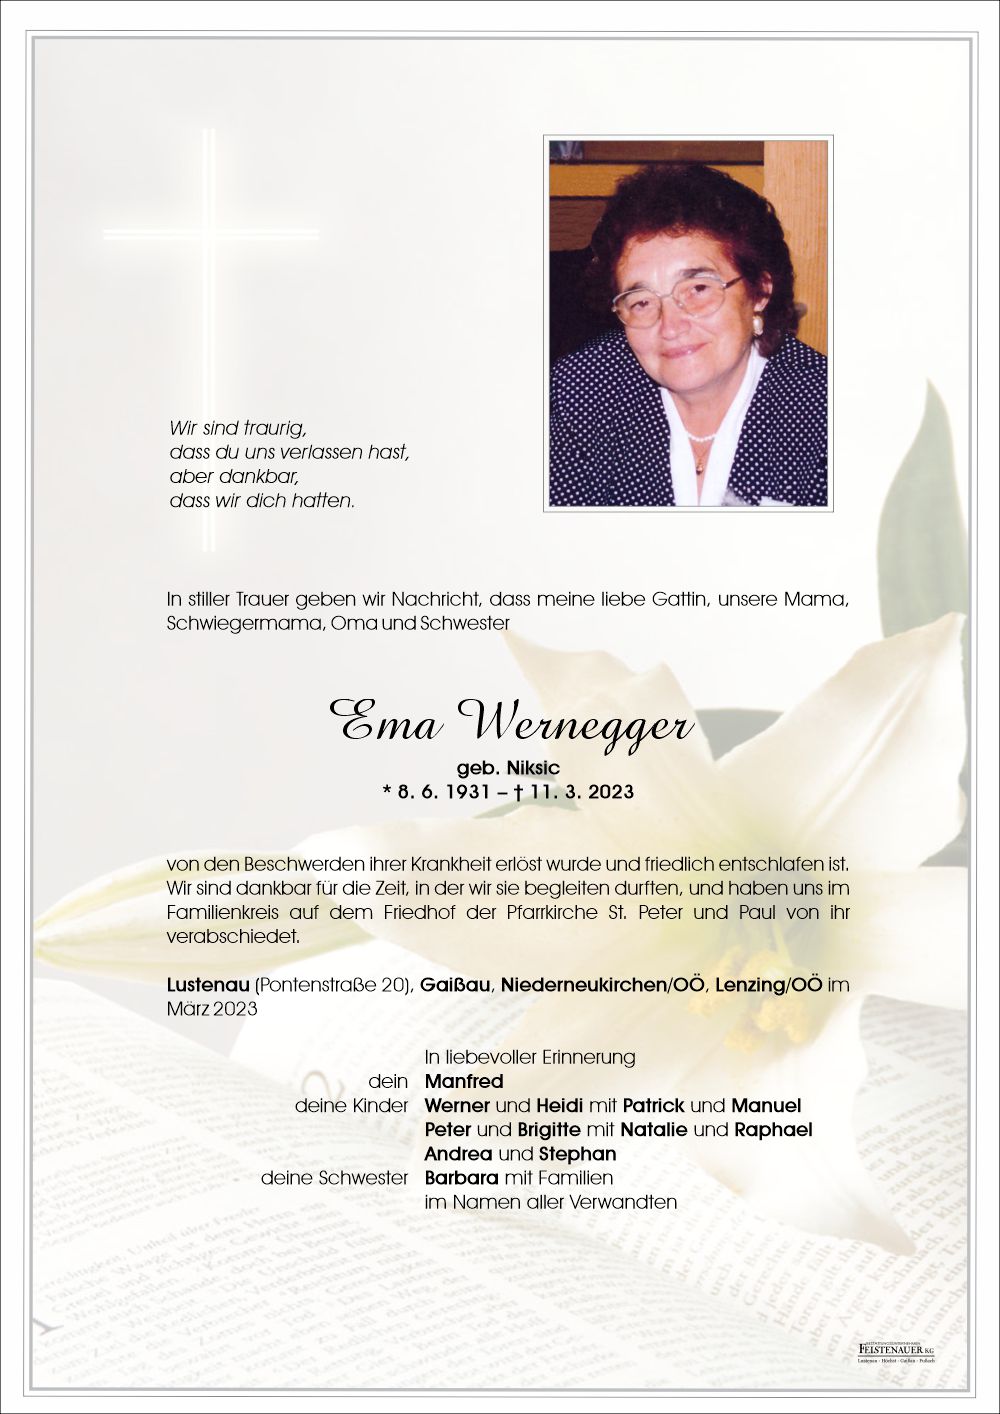 Ema Wernegger